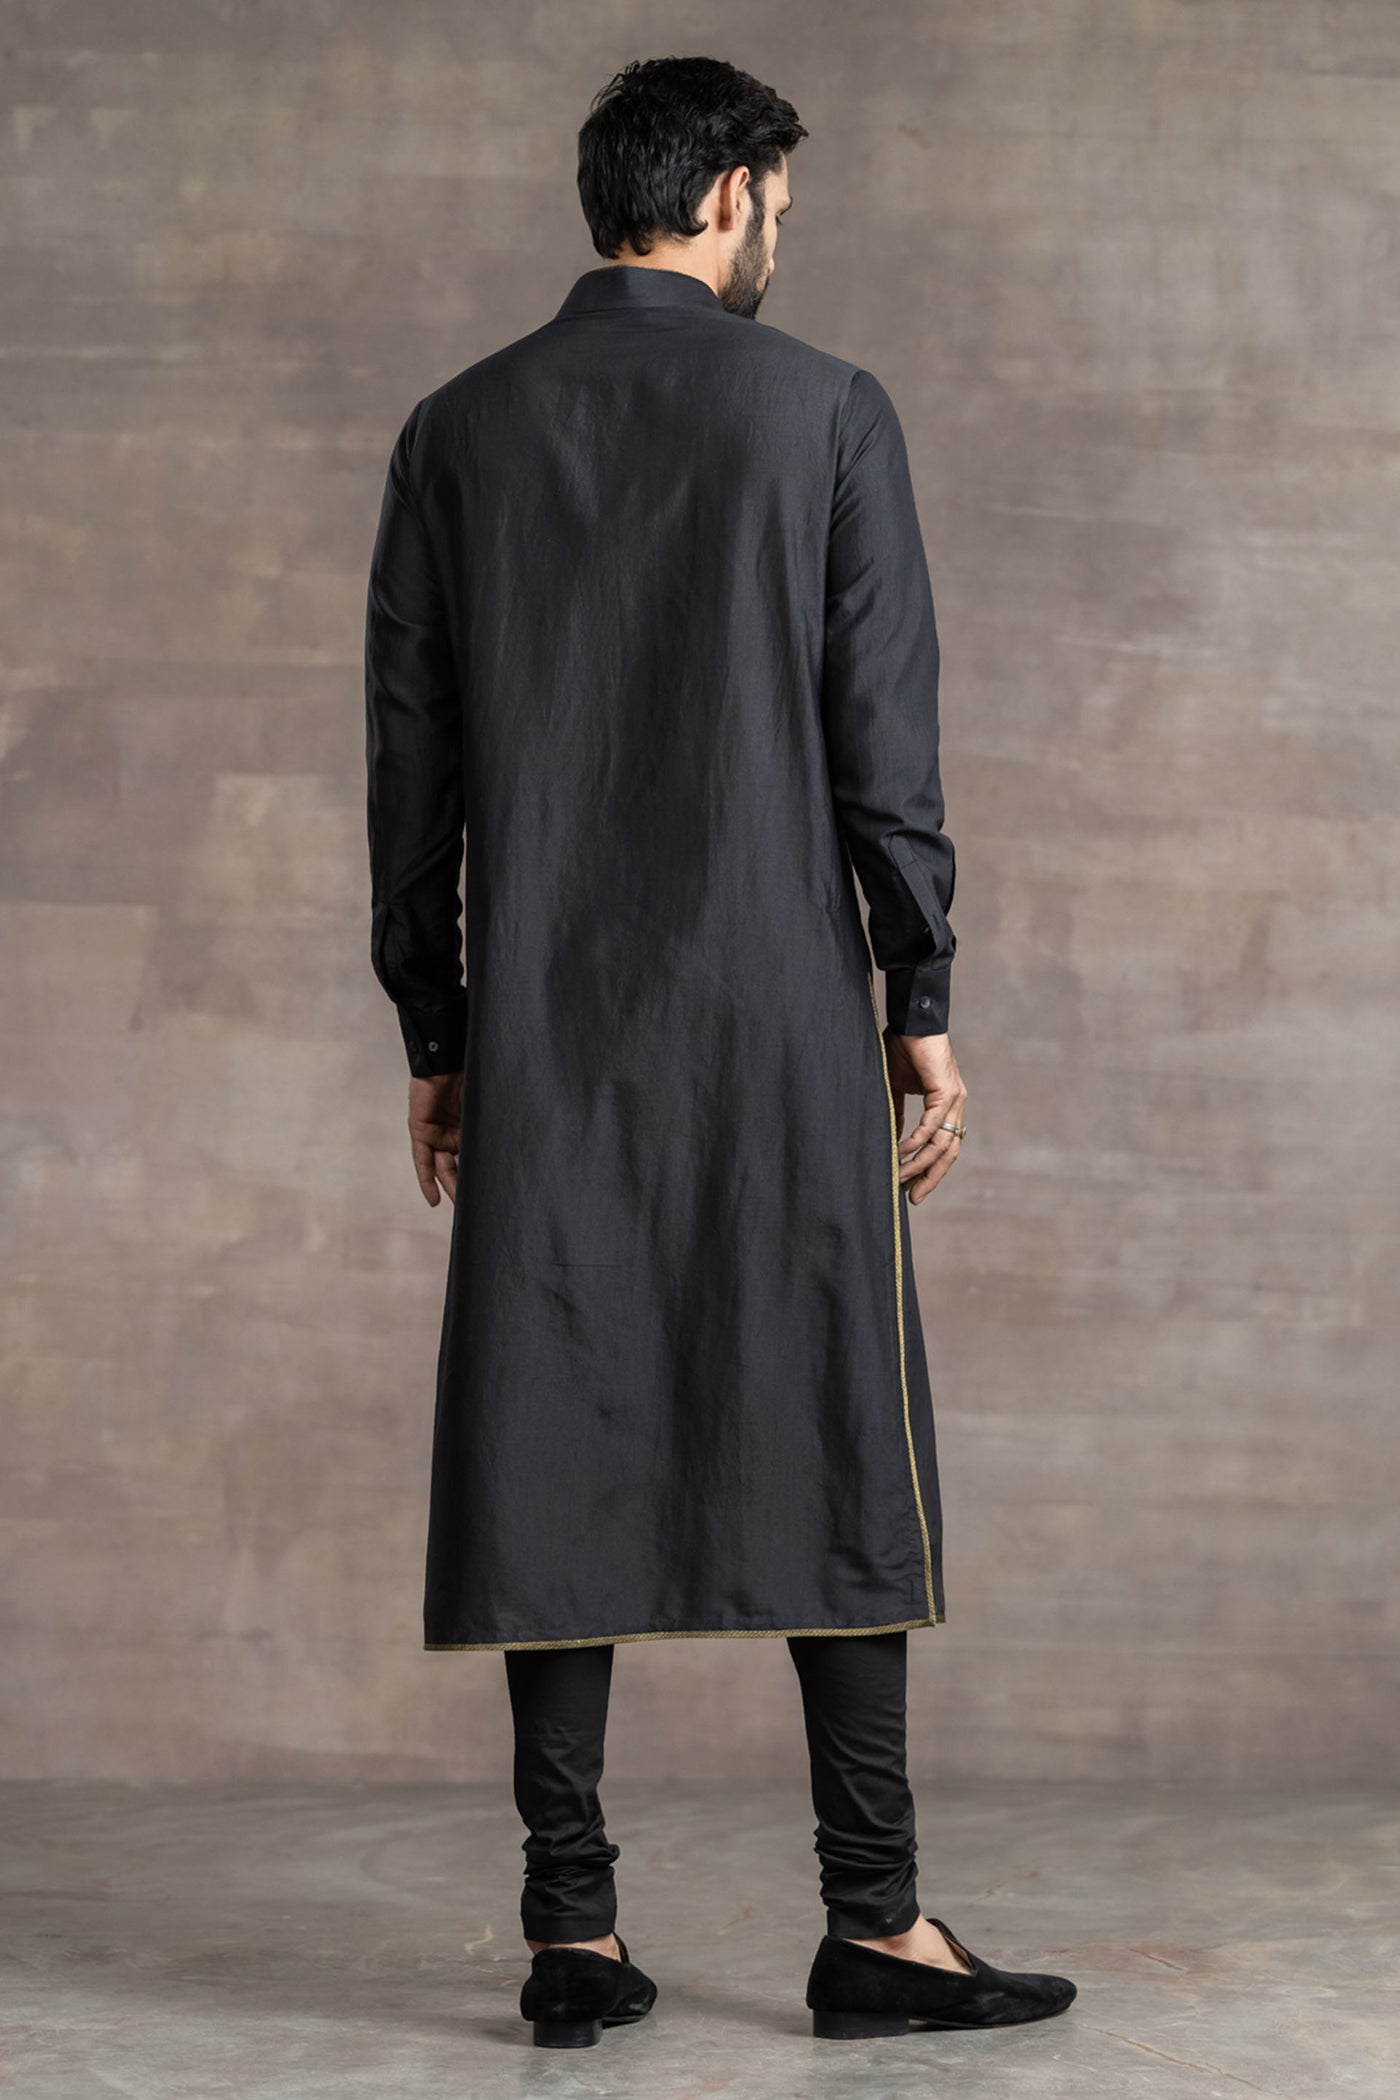 Tarun Tahitliani Black Silk Kurta indian designer wear menswear online shopping melange singapore